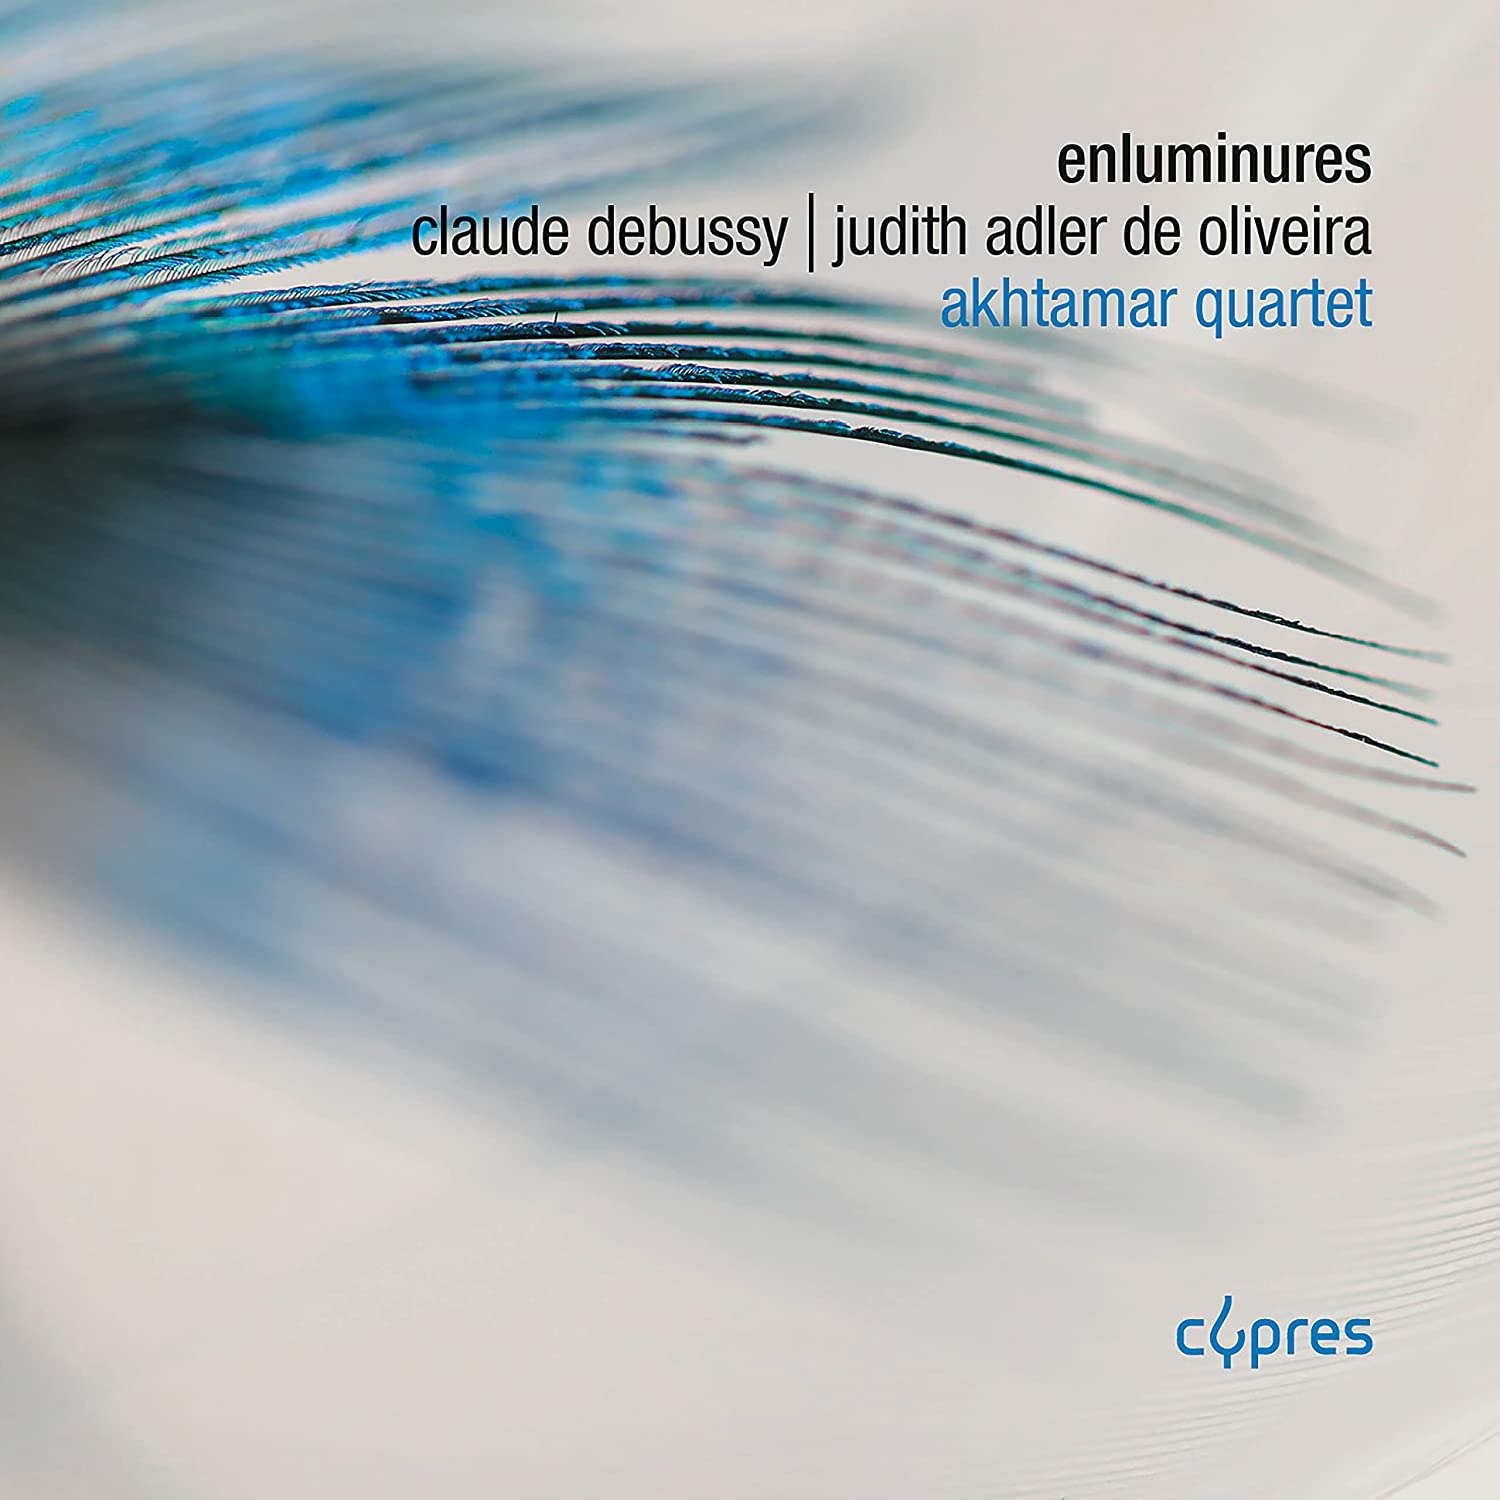 CD Shop - AKHTAMAR QUARTET DEBUSSY & ADLER DE OLIVEIRA: ENLUMINURES